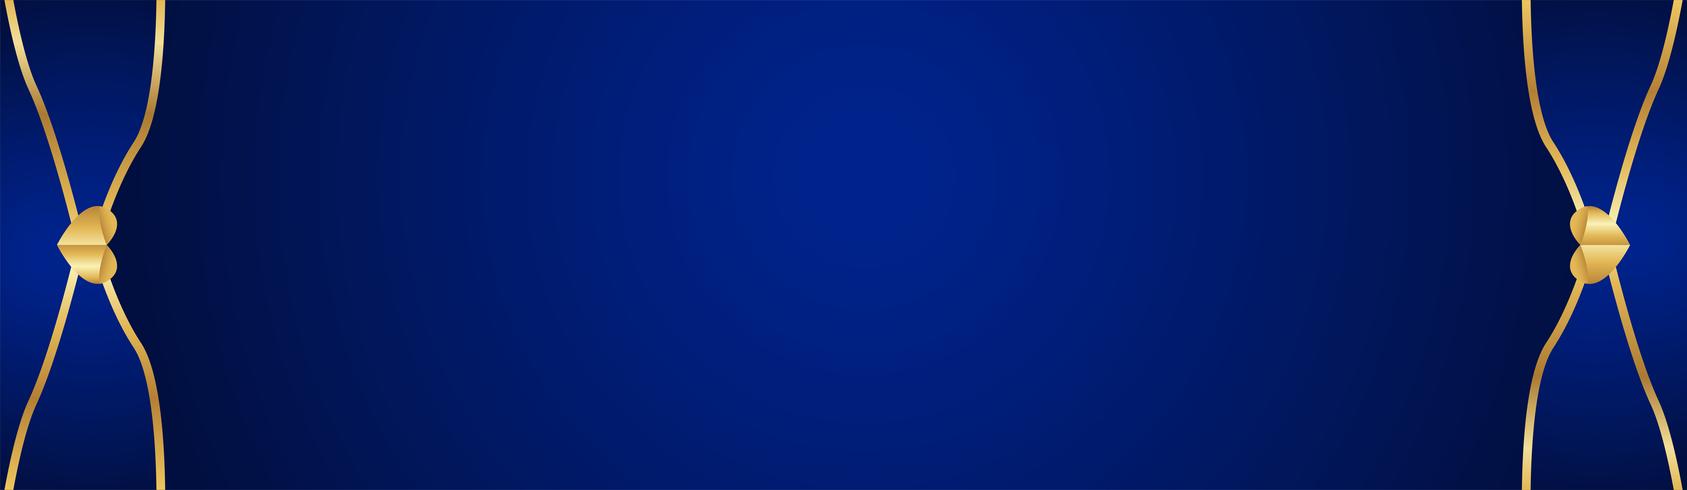 Fondo azul abstracto en estilo indio superior. Diseño de plantillas para portada, presentación de negocios, banner web, invitación de boda y empaques de lujo. Ilustración de vector con borde dorado.